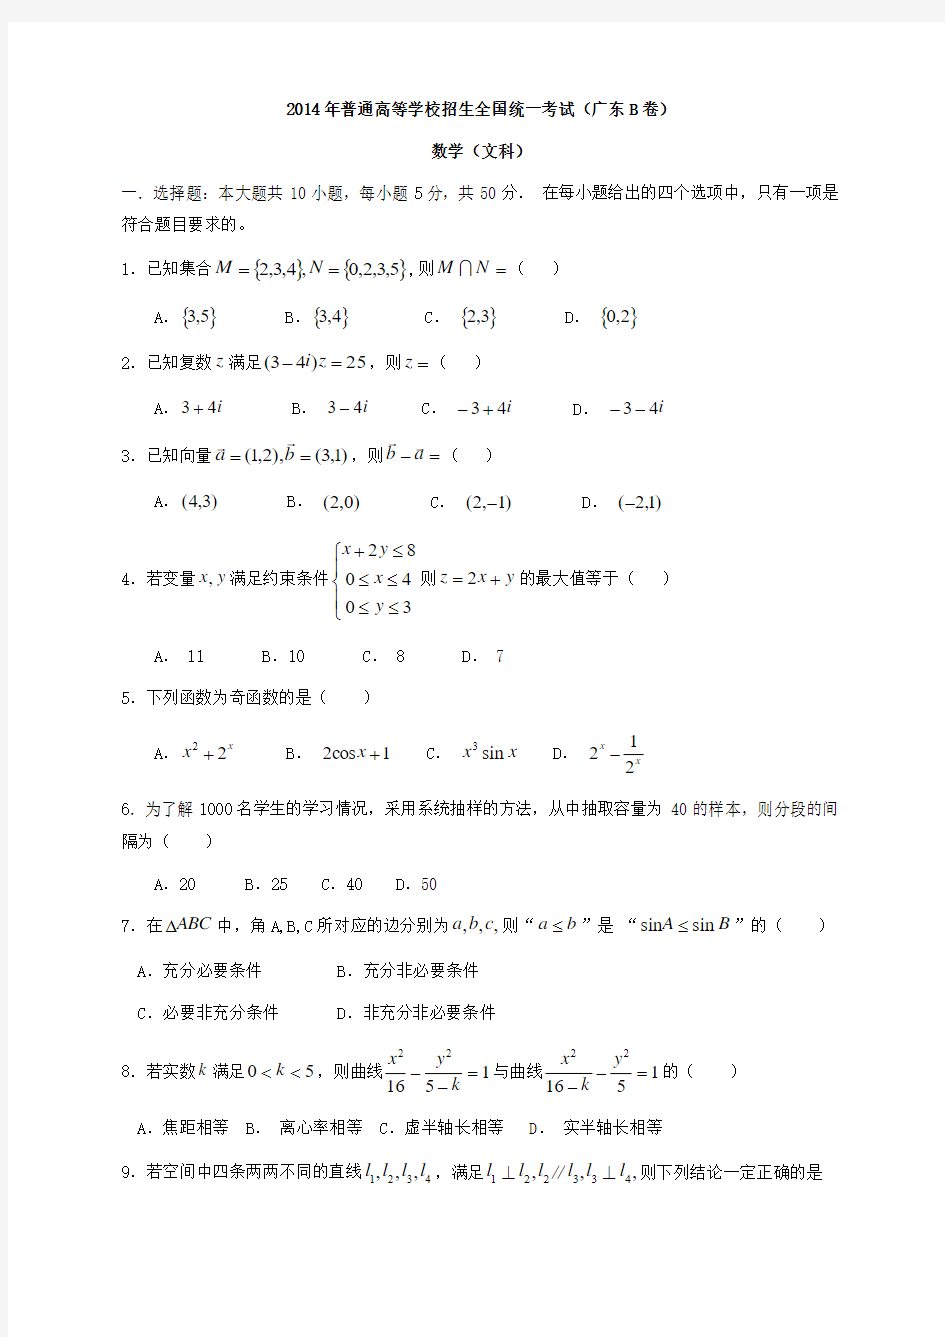 2014全国统一高考数学真题及逐题详细解析(文科)—广东卷